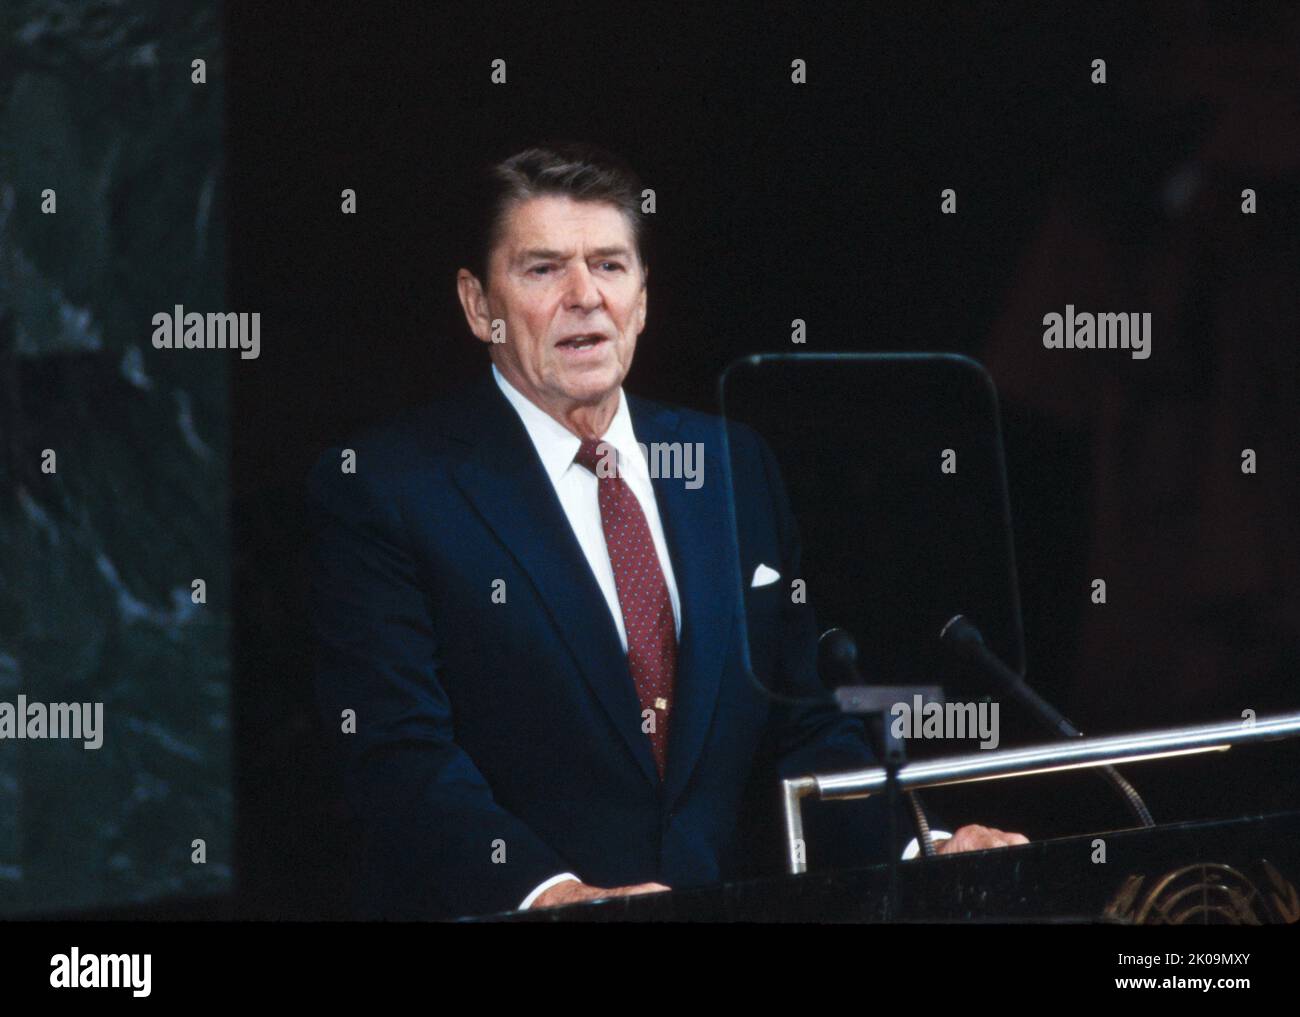 Ronald Wilson Reagan (1911 - 2004) amerikanischer Politiker, der von 1981 bis 1989 als Präsident der Vereinigten Staaten von 40. fungierte. Er war Mitglied der Republikanischen Partei und diente zuvor von 1967 bis 1975 als Gouverneur von Kalifornien 33., nachdem er eine Karriere als Hollywood-Schauspieler und Gewerkschaftsführer hinter sich hatte. Stockfoto